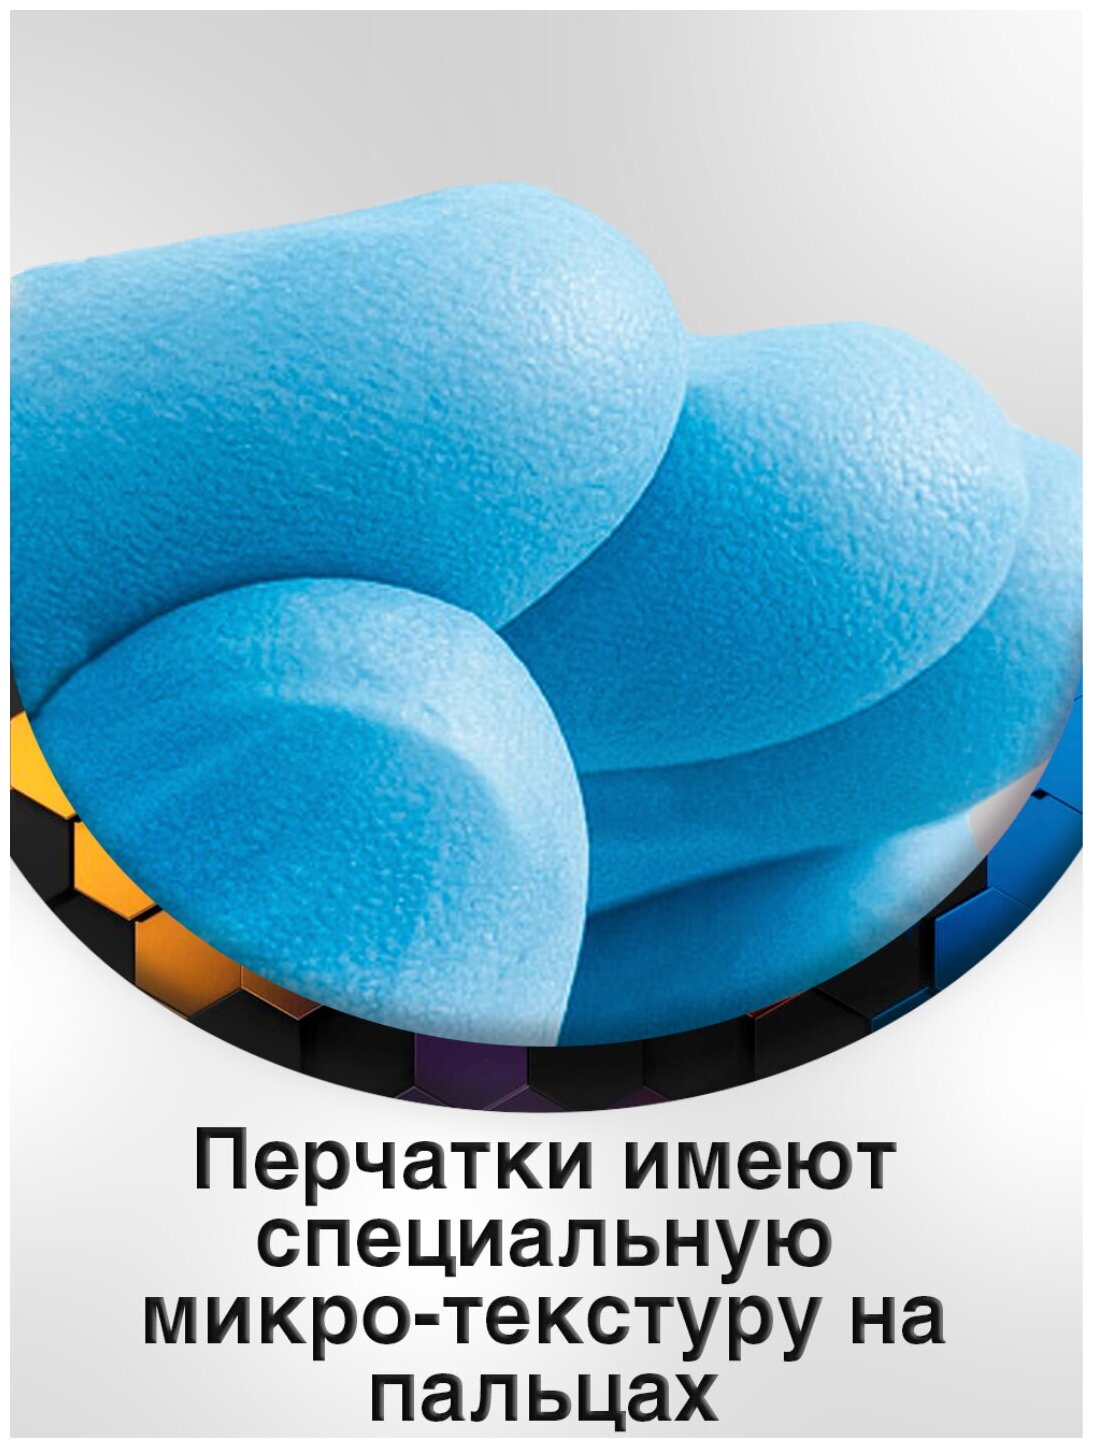 Перчатки нитриловые одноразовые 100 пар/200 шт р. XS, голубой, 1 уп.